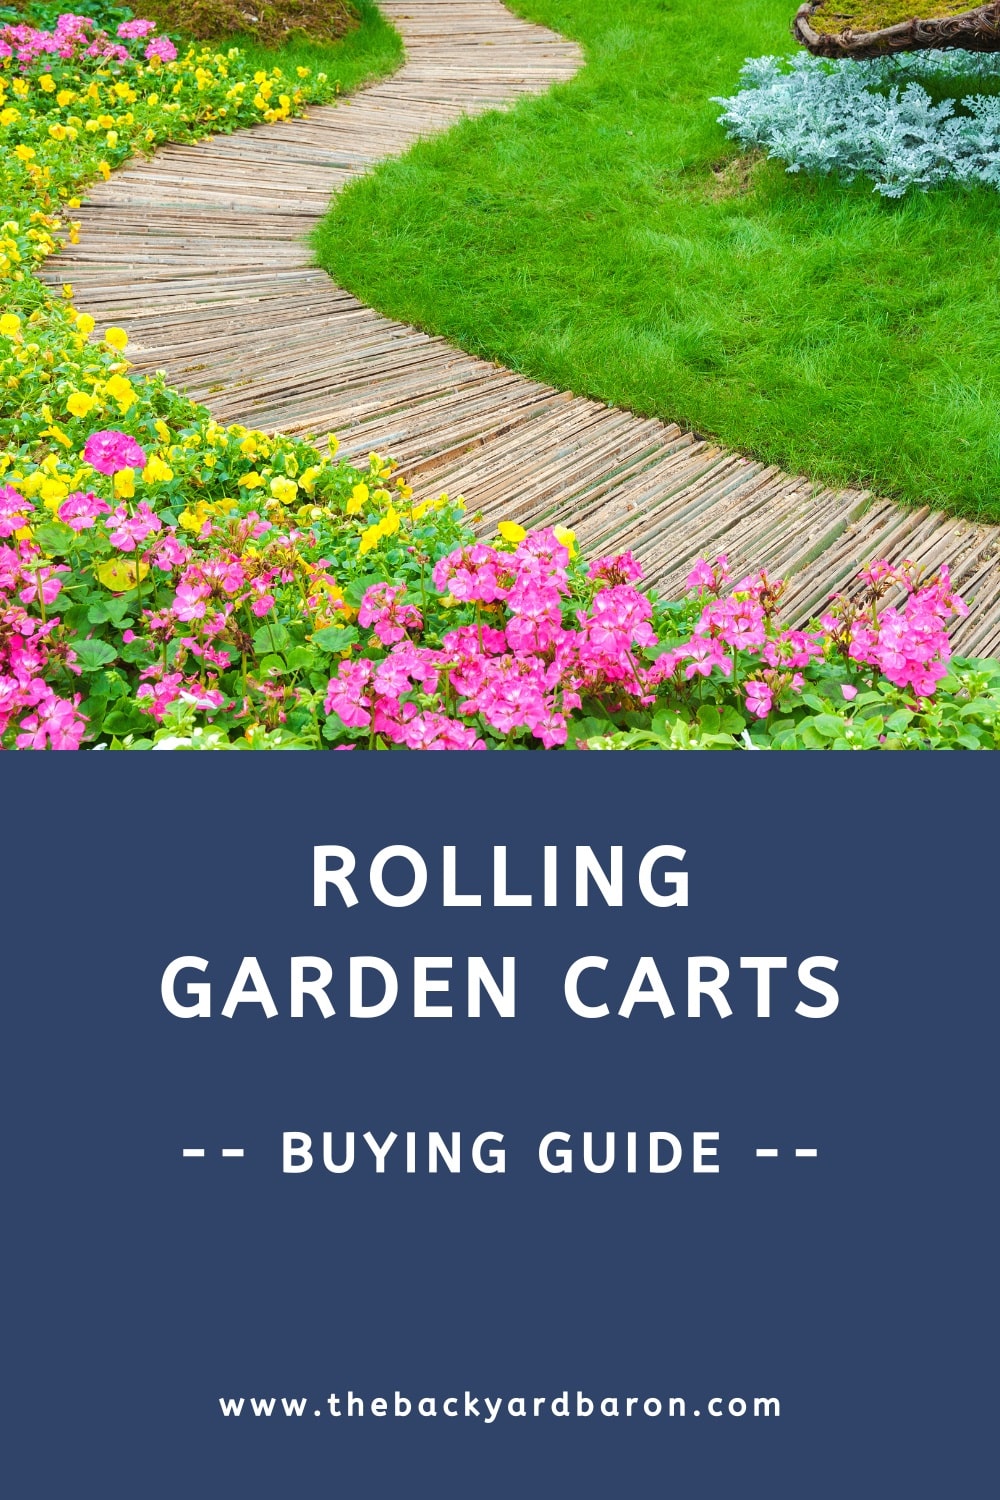 Rolling garden cart buying guide